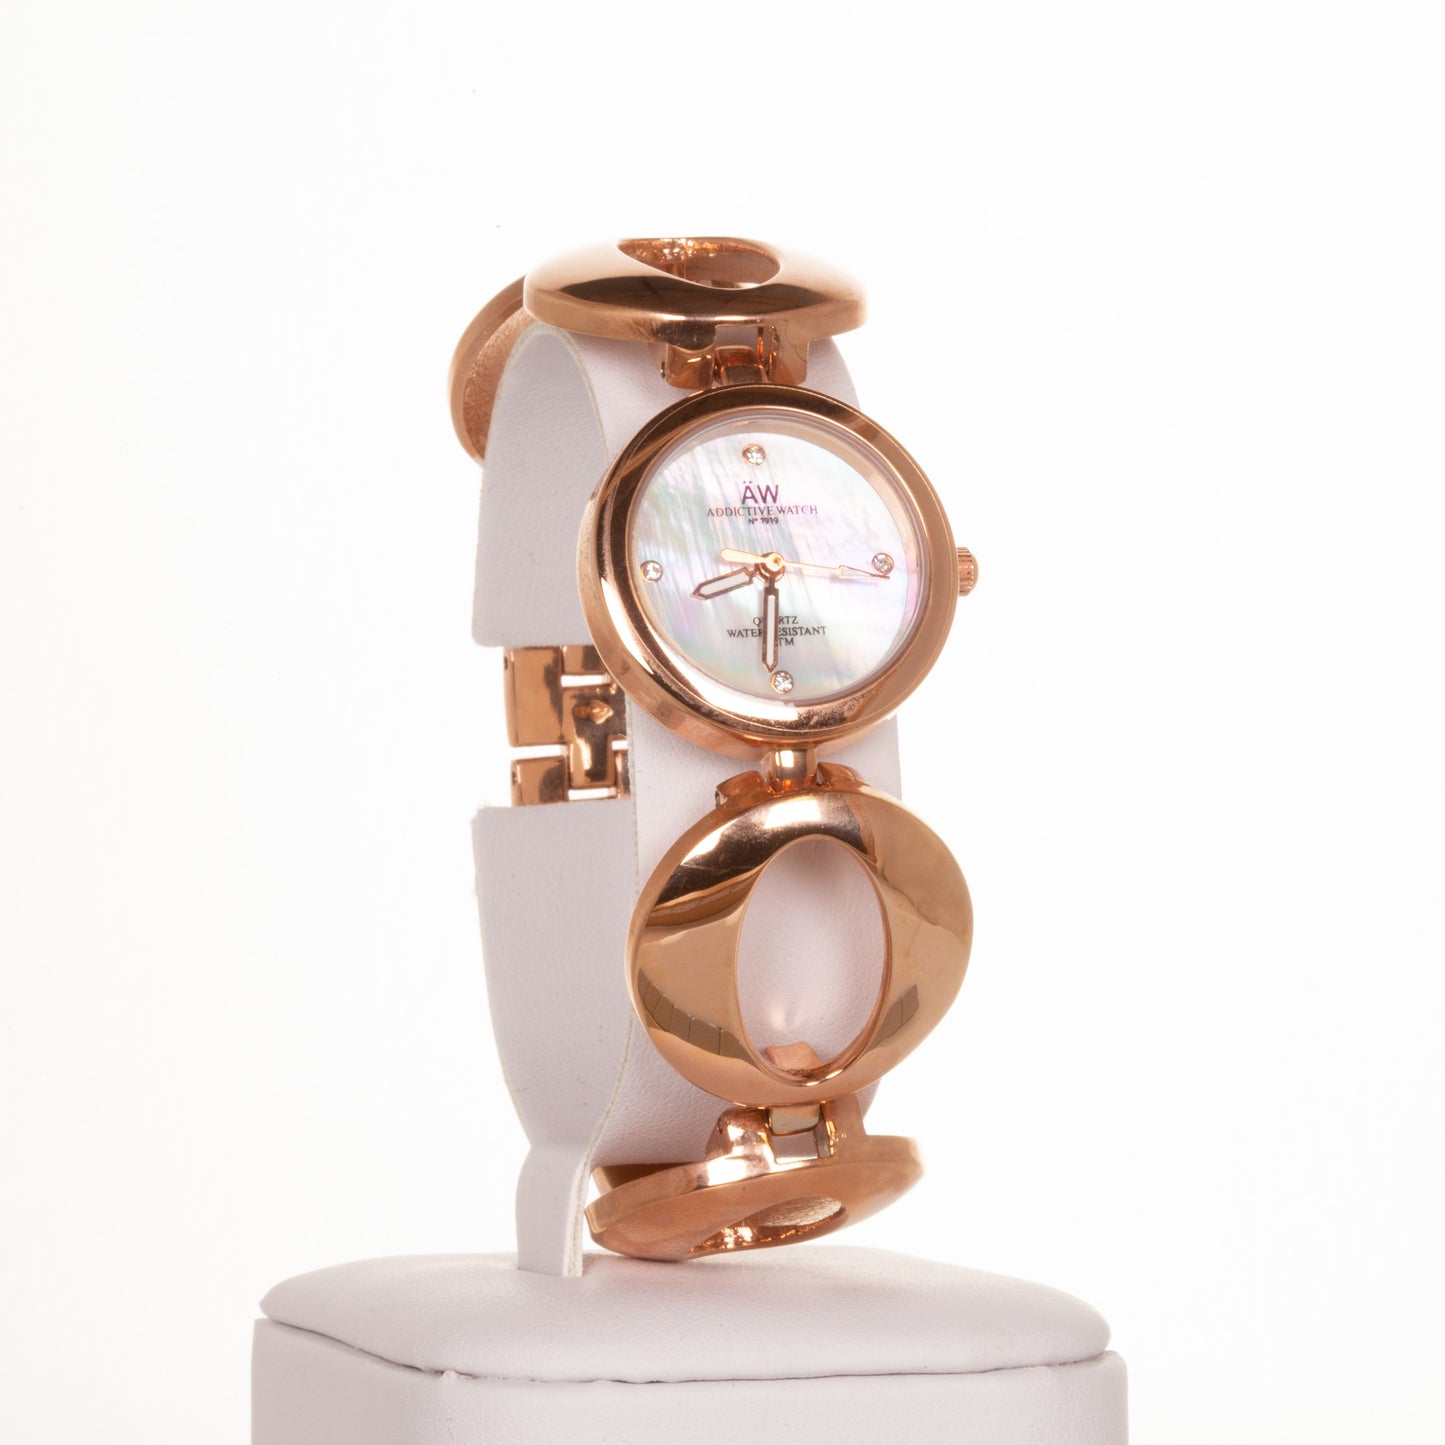 AW dámské hodinky v barvě růžového zlata s řemínkem se symbolem nekonečna a 4 krystaly křemenu